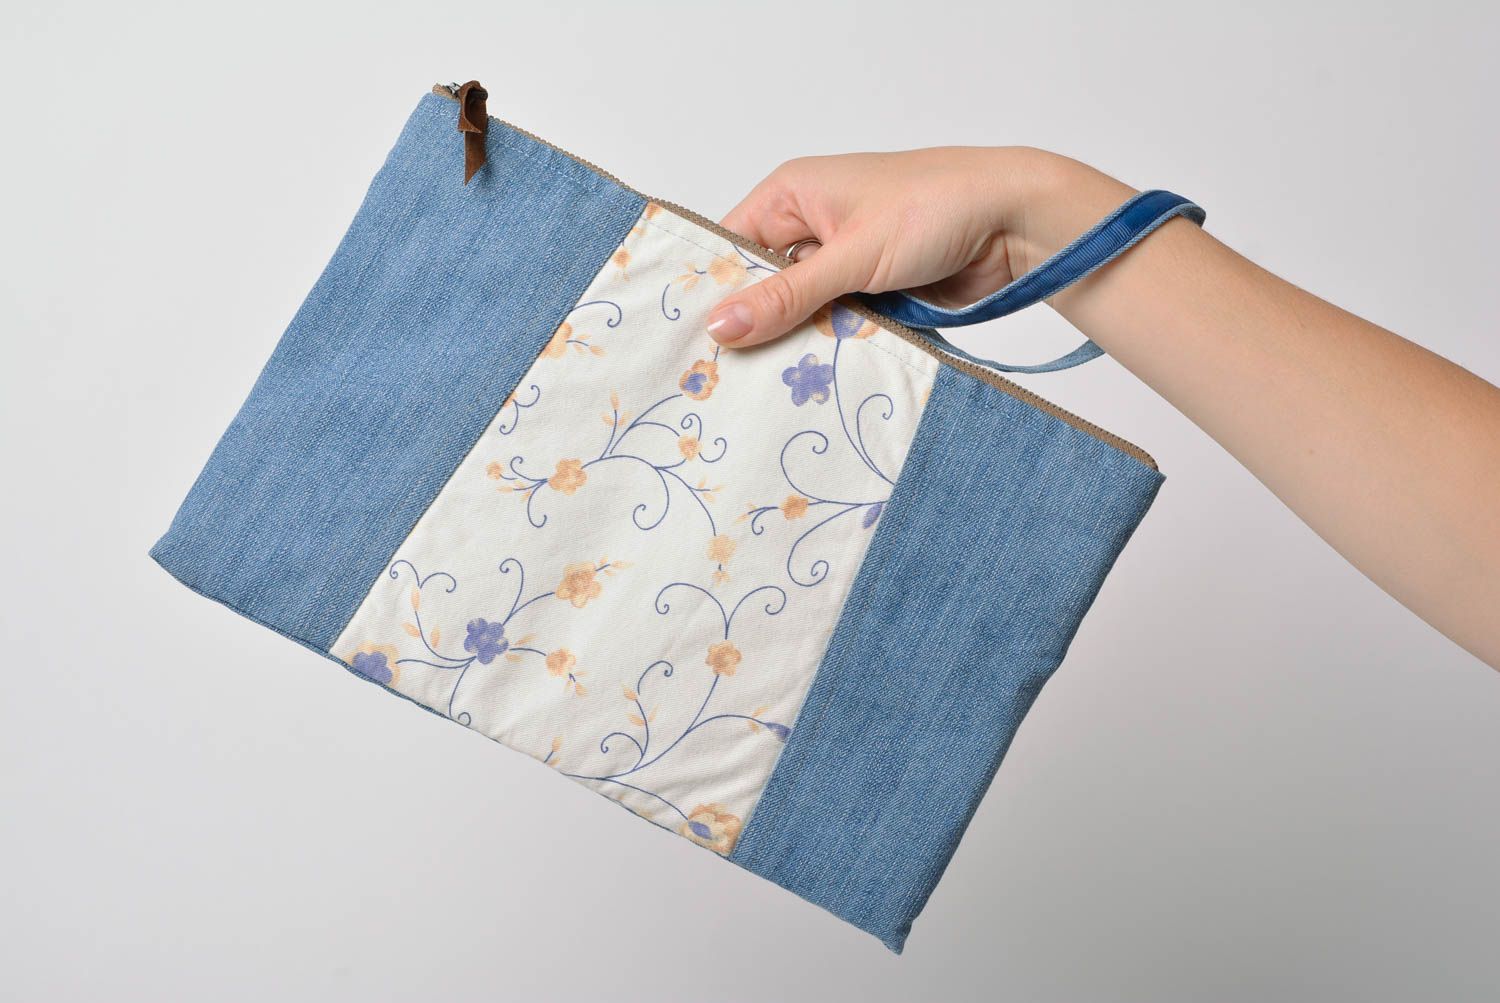 Small handmade fabric clutch bag designer female blue purse evening accessory photo 5